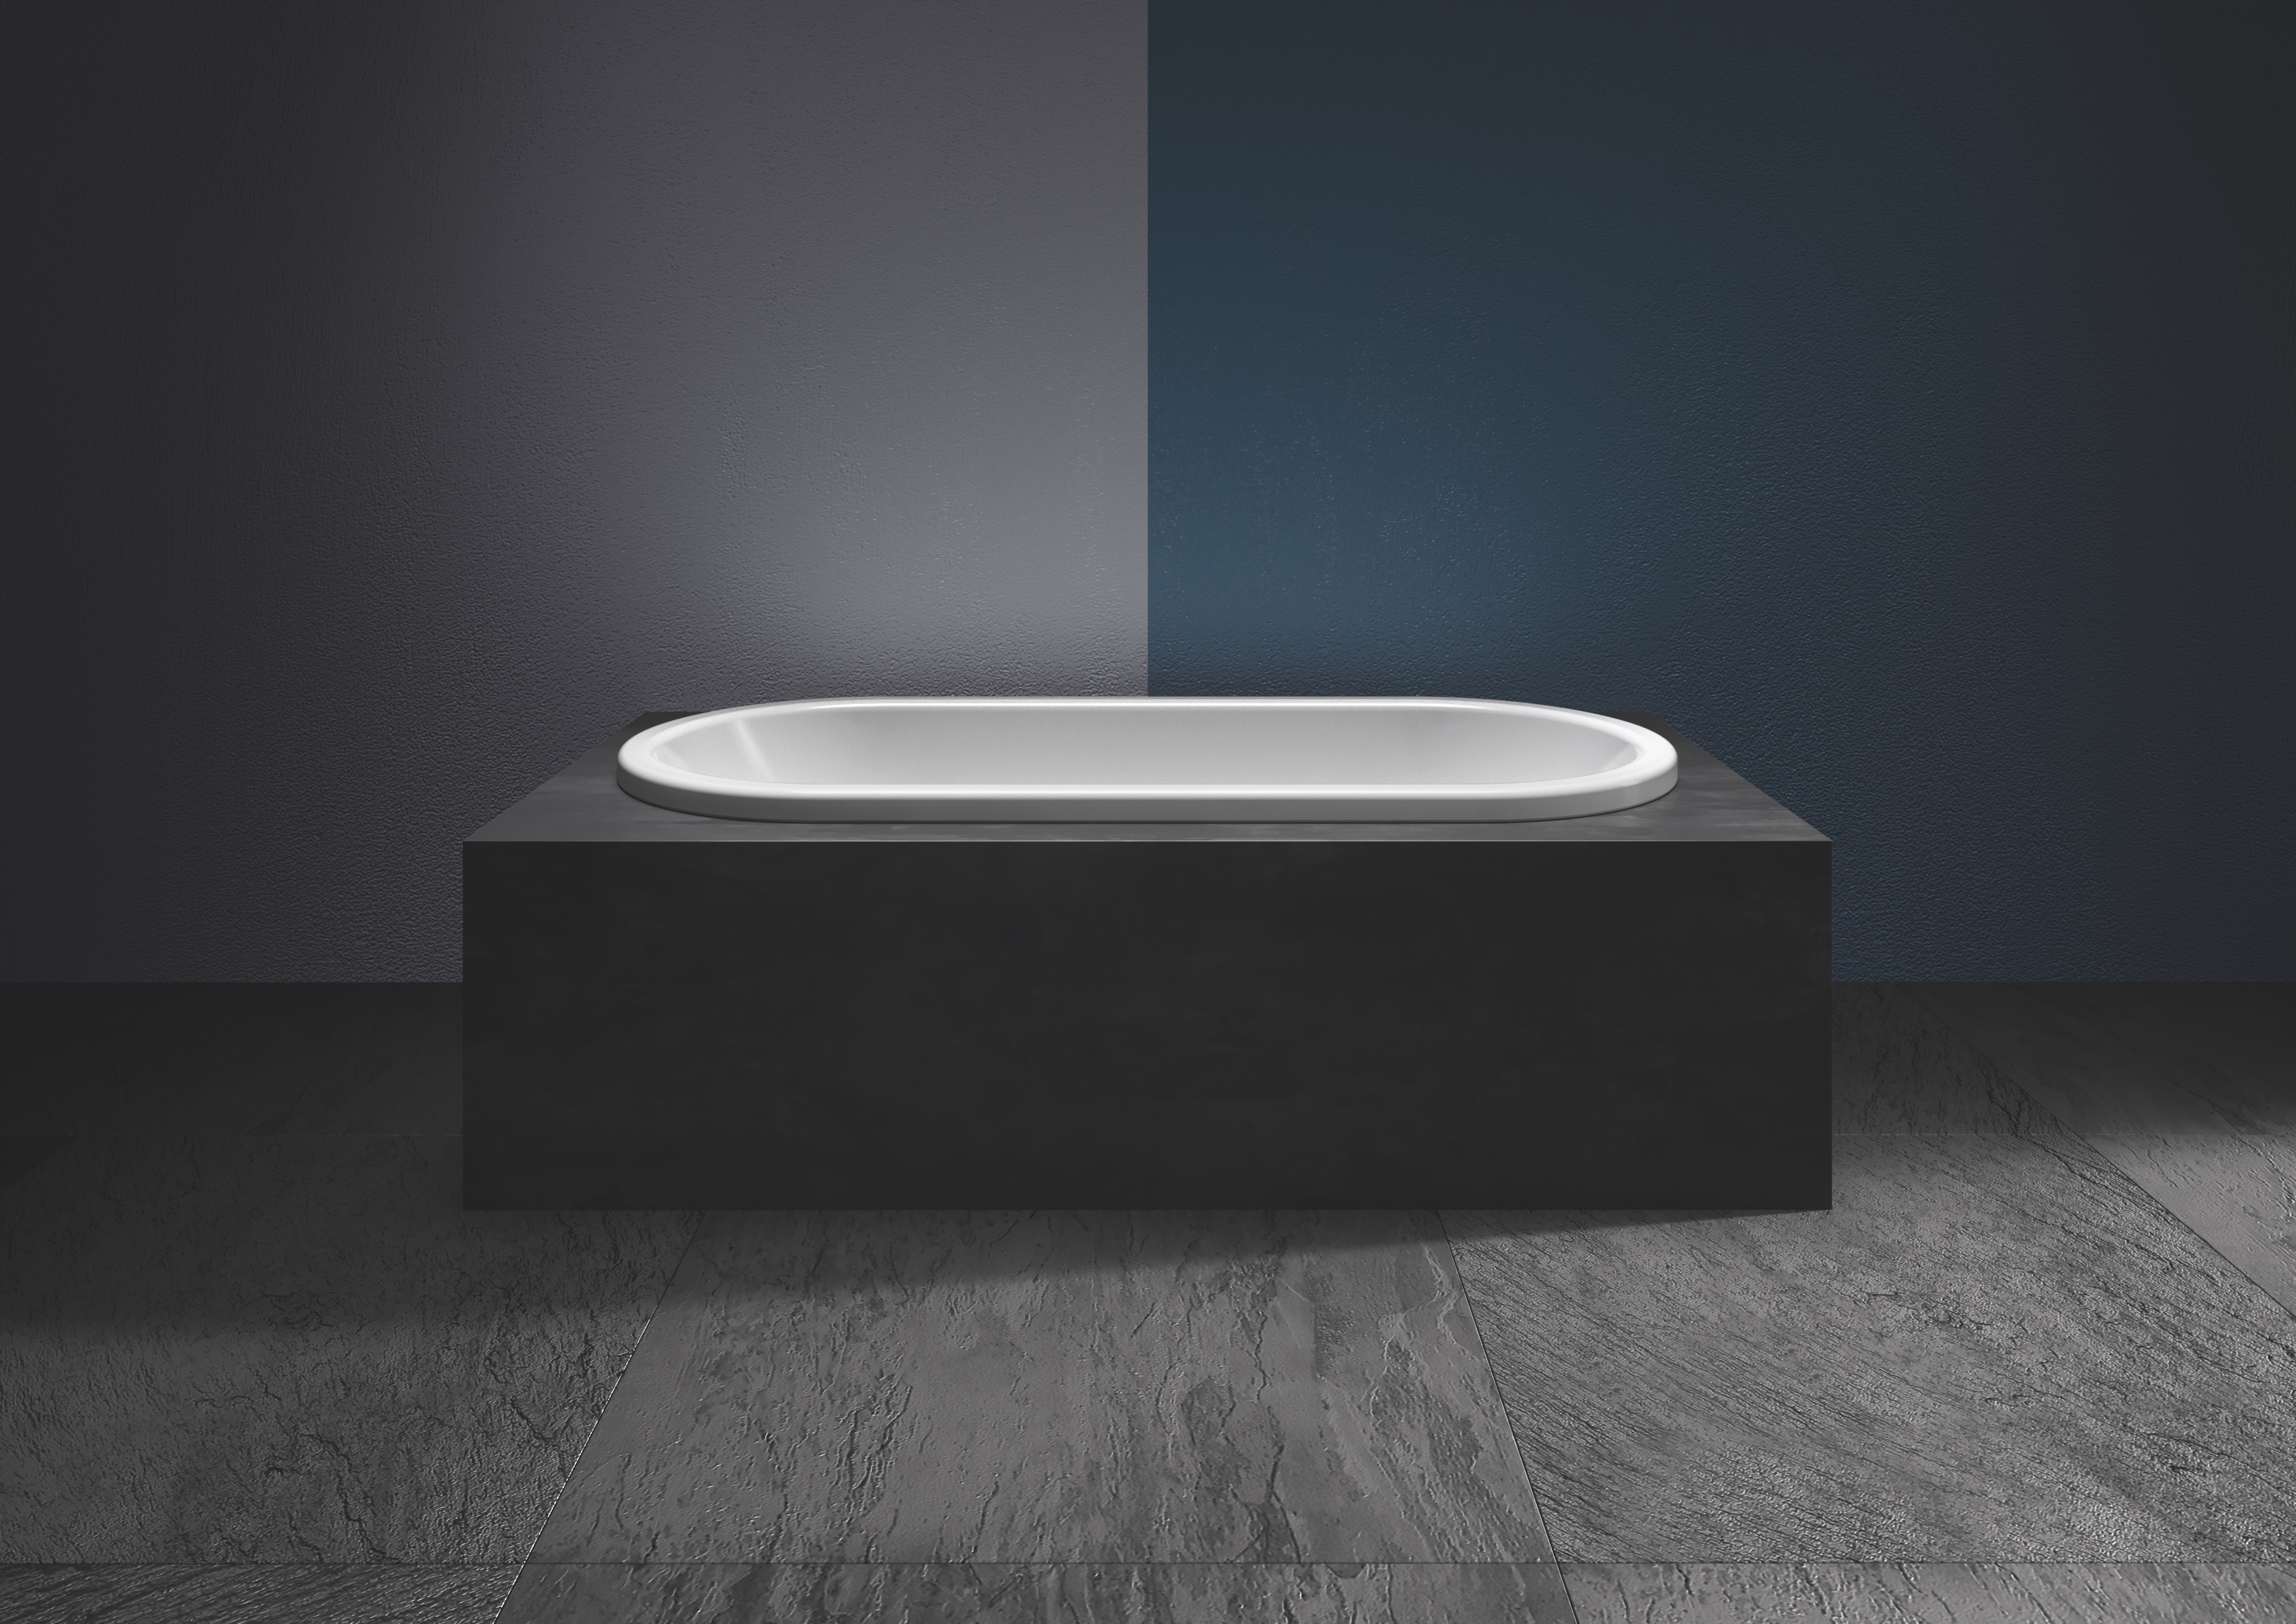 Kaldewei Badewanne „Centro Duo Oval“ oval 180 × 80 cm, mit Überlauf, ohne Wannenträger in alpinweiß